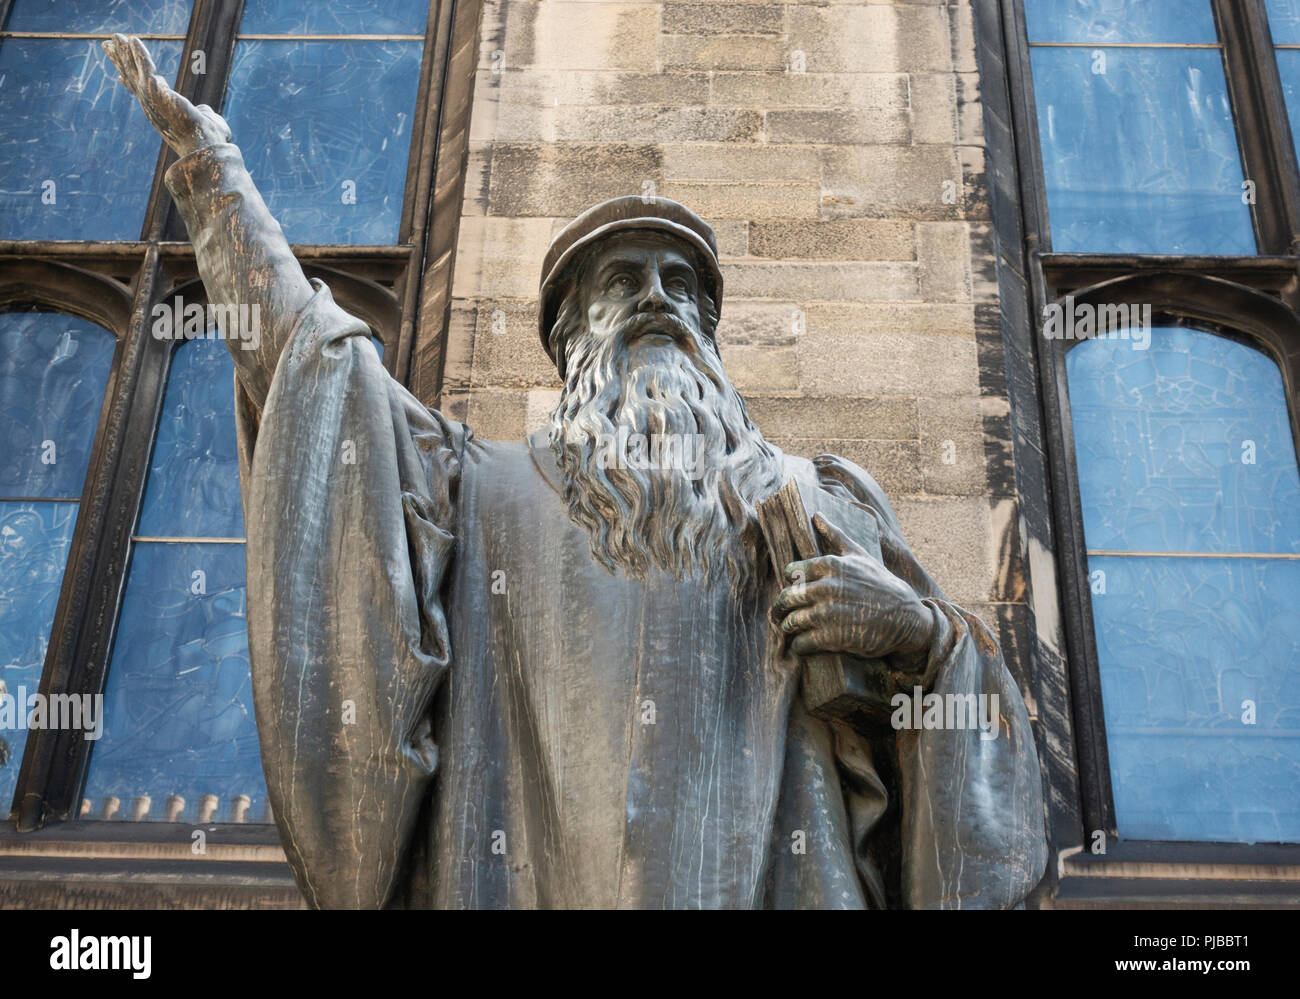 Statue de John Knox à New College, Université d'Édimbourg, Écosse, Royaume-Uni Banque D'Images